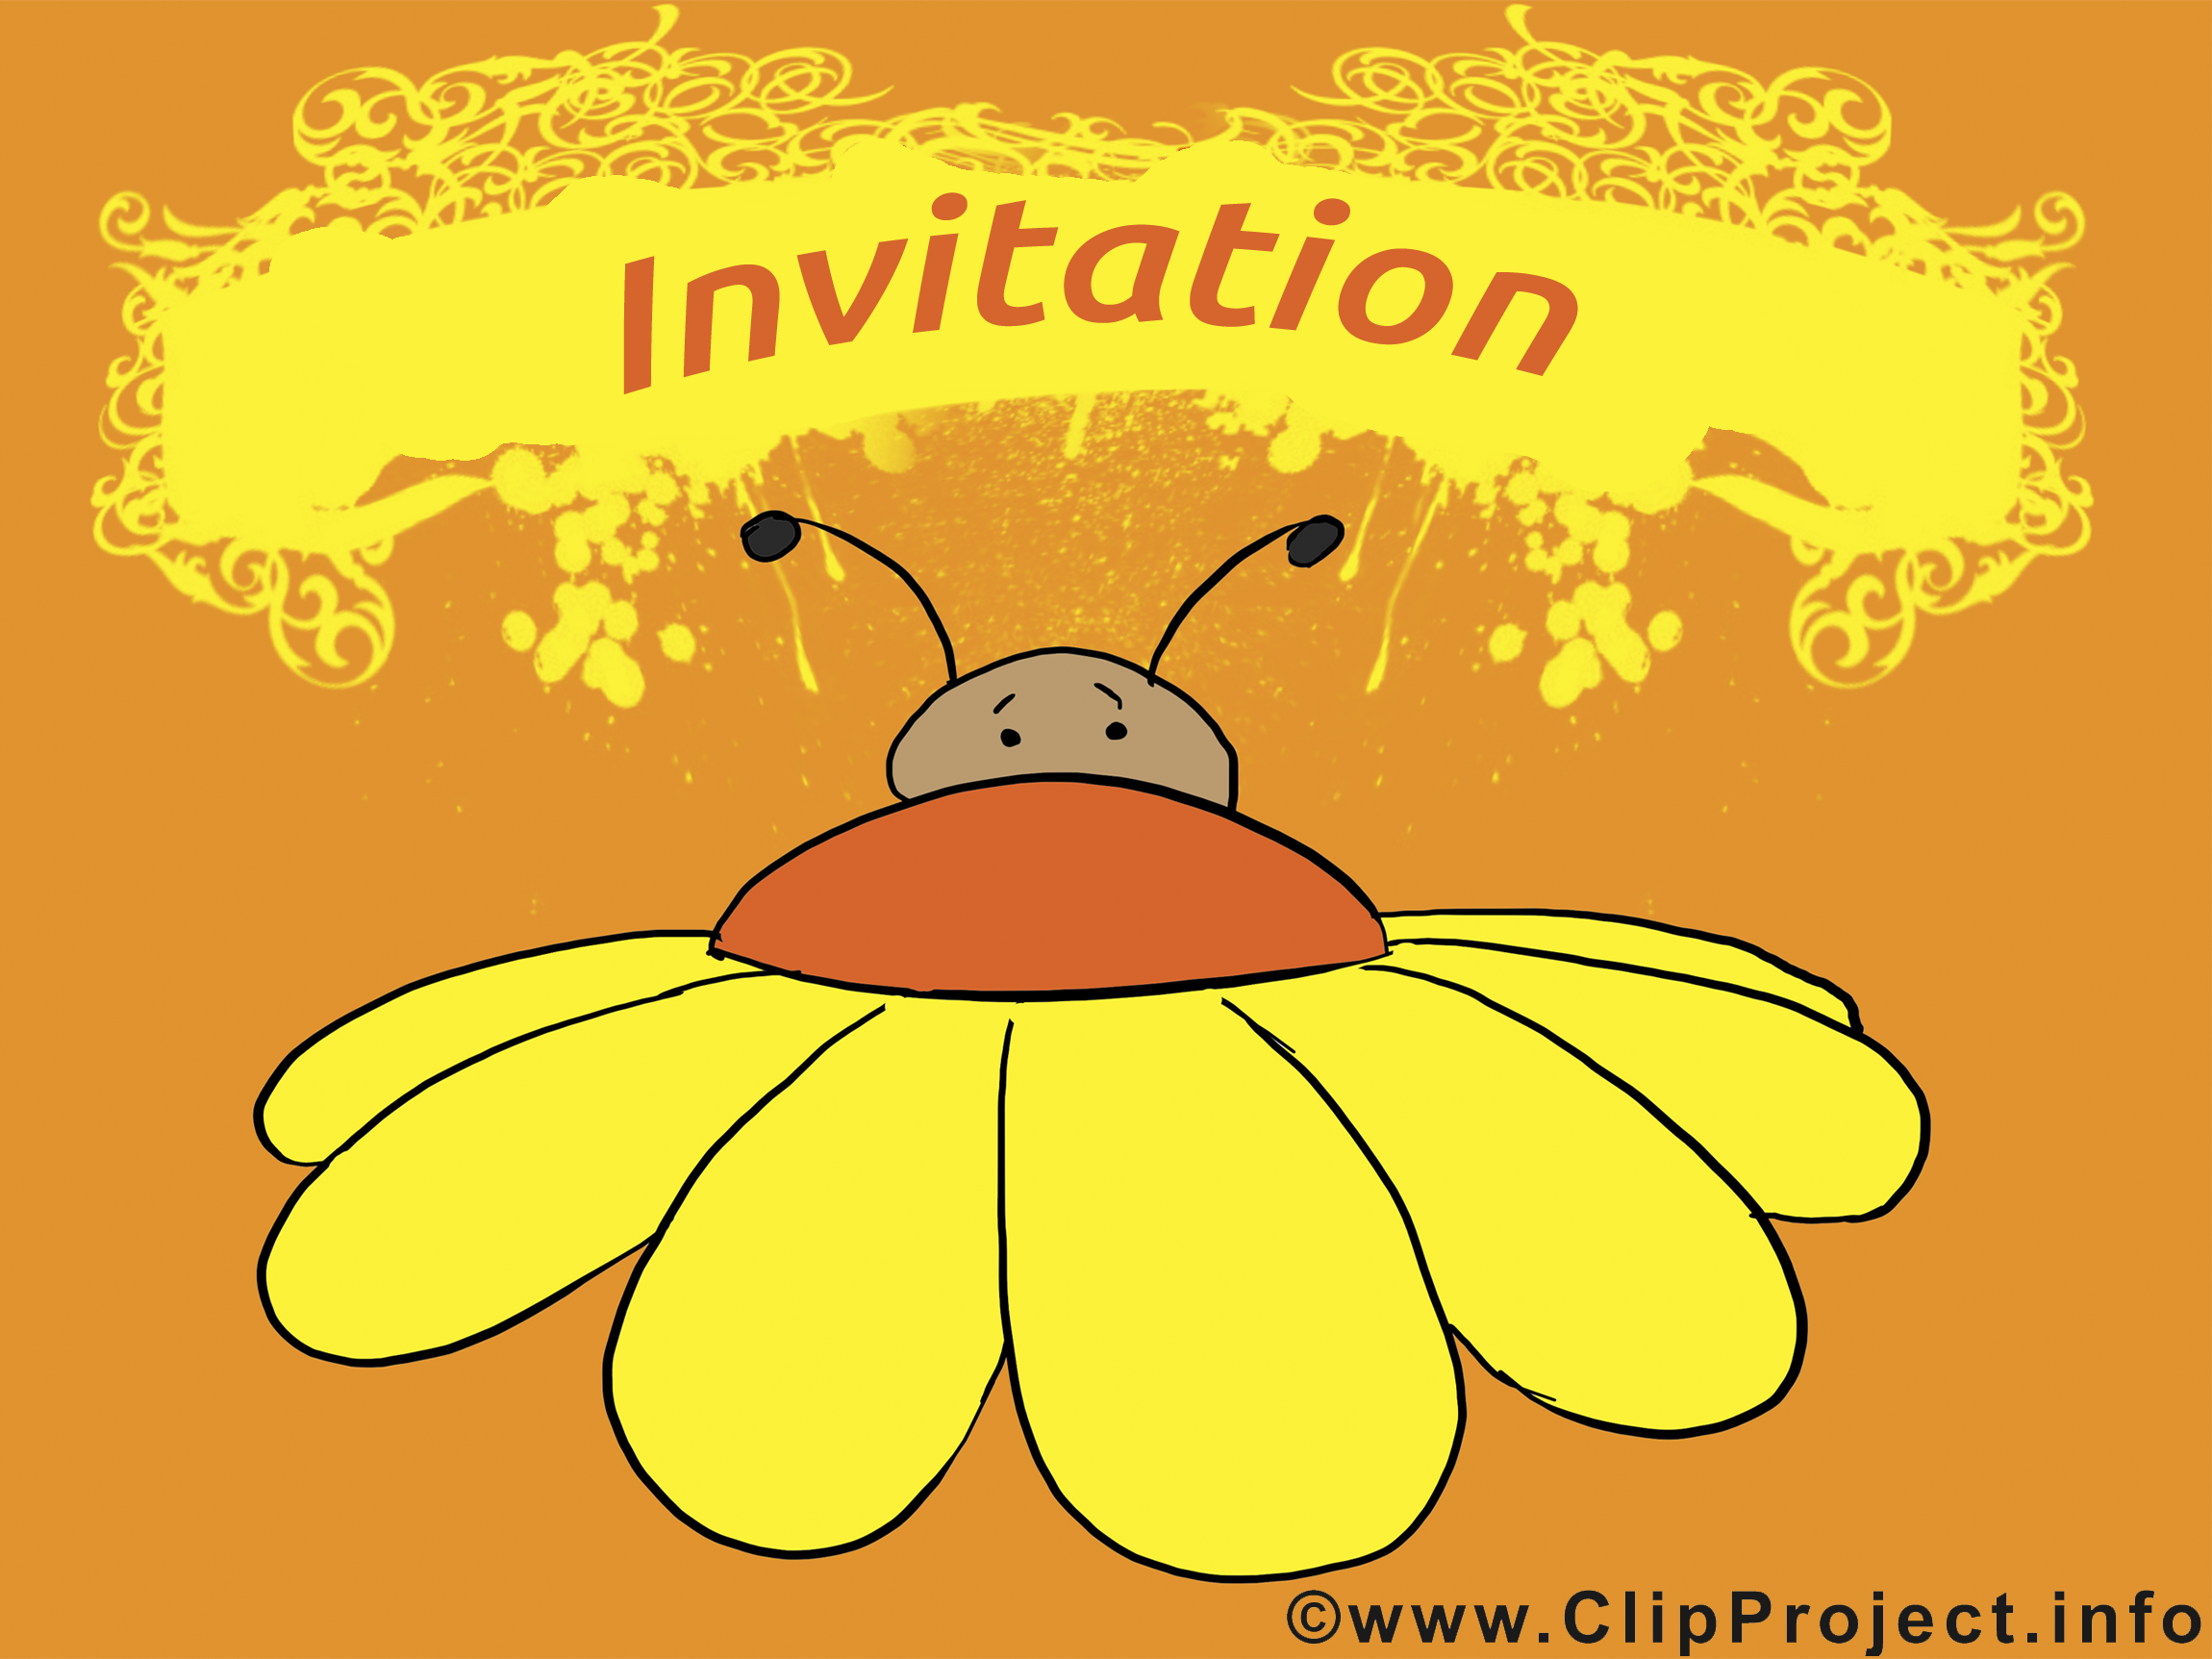 Insect clip art gratuit - Invitation dessin